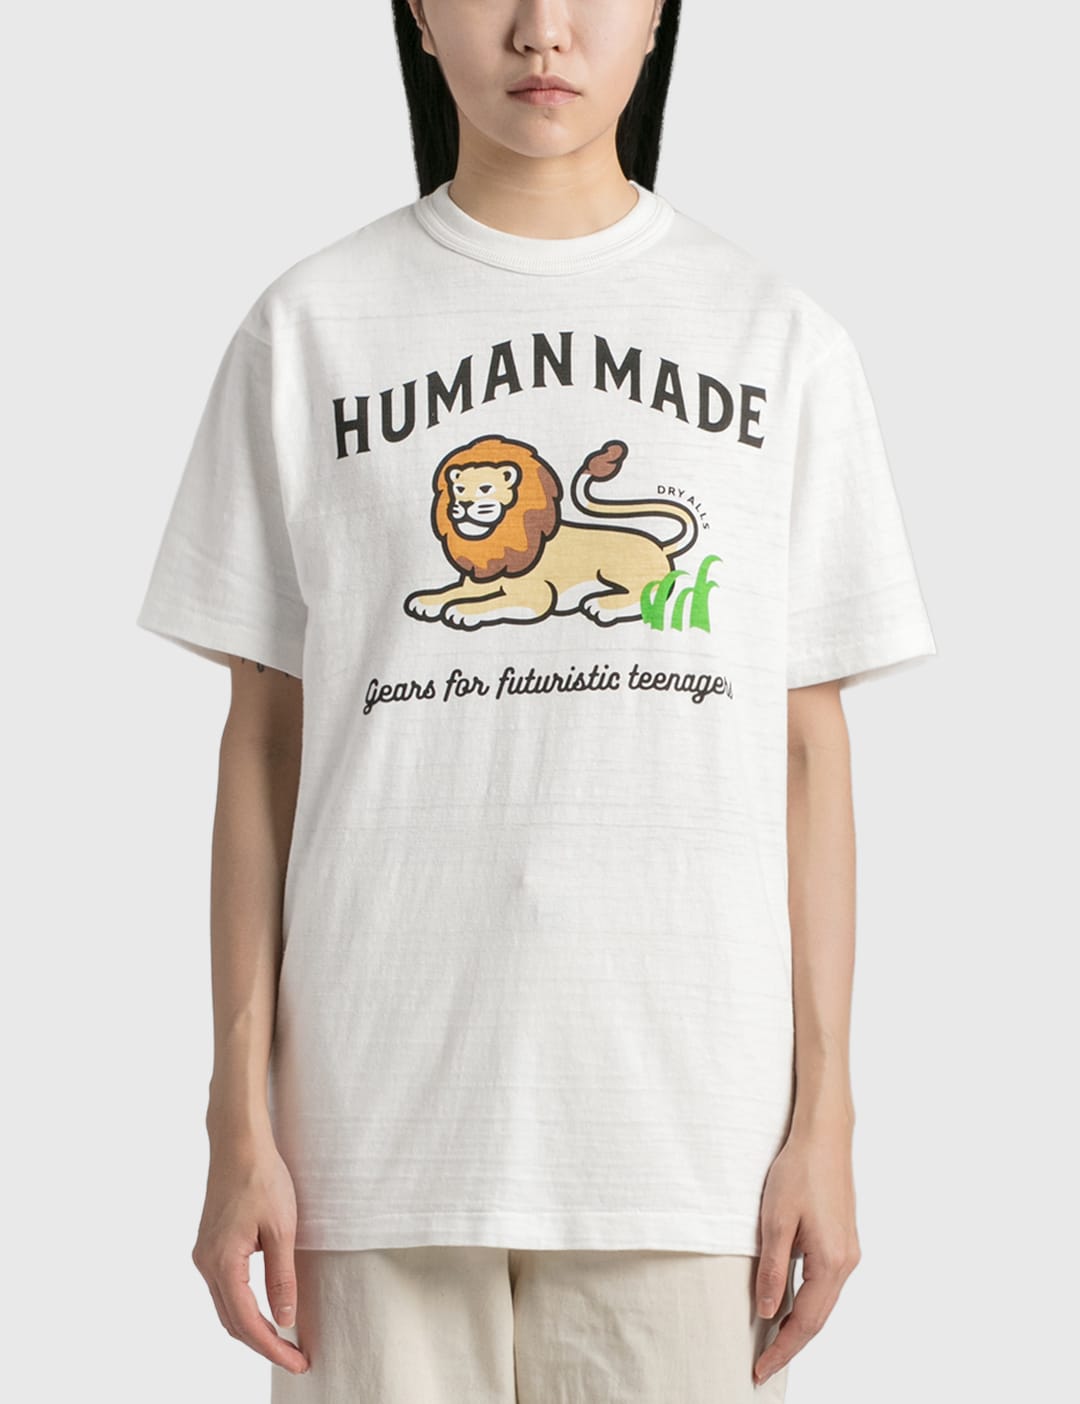 Human Made - ライオン Tシャツ | HBX - ハイプビースト(Hypebeast)が ...